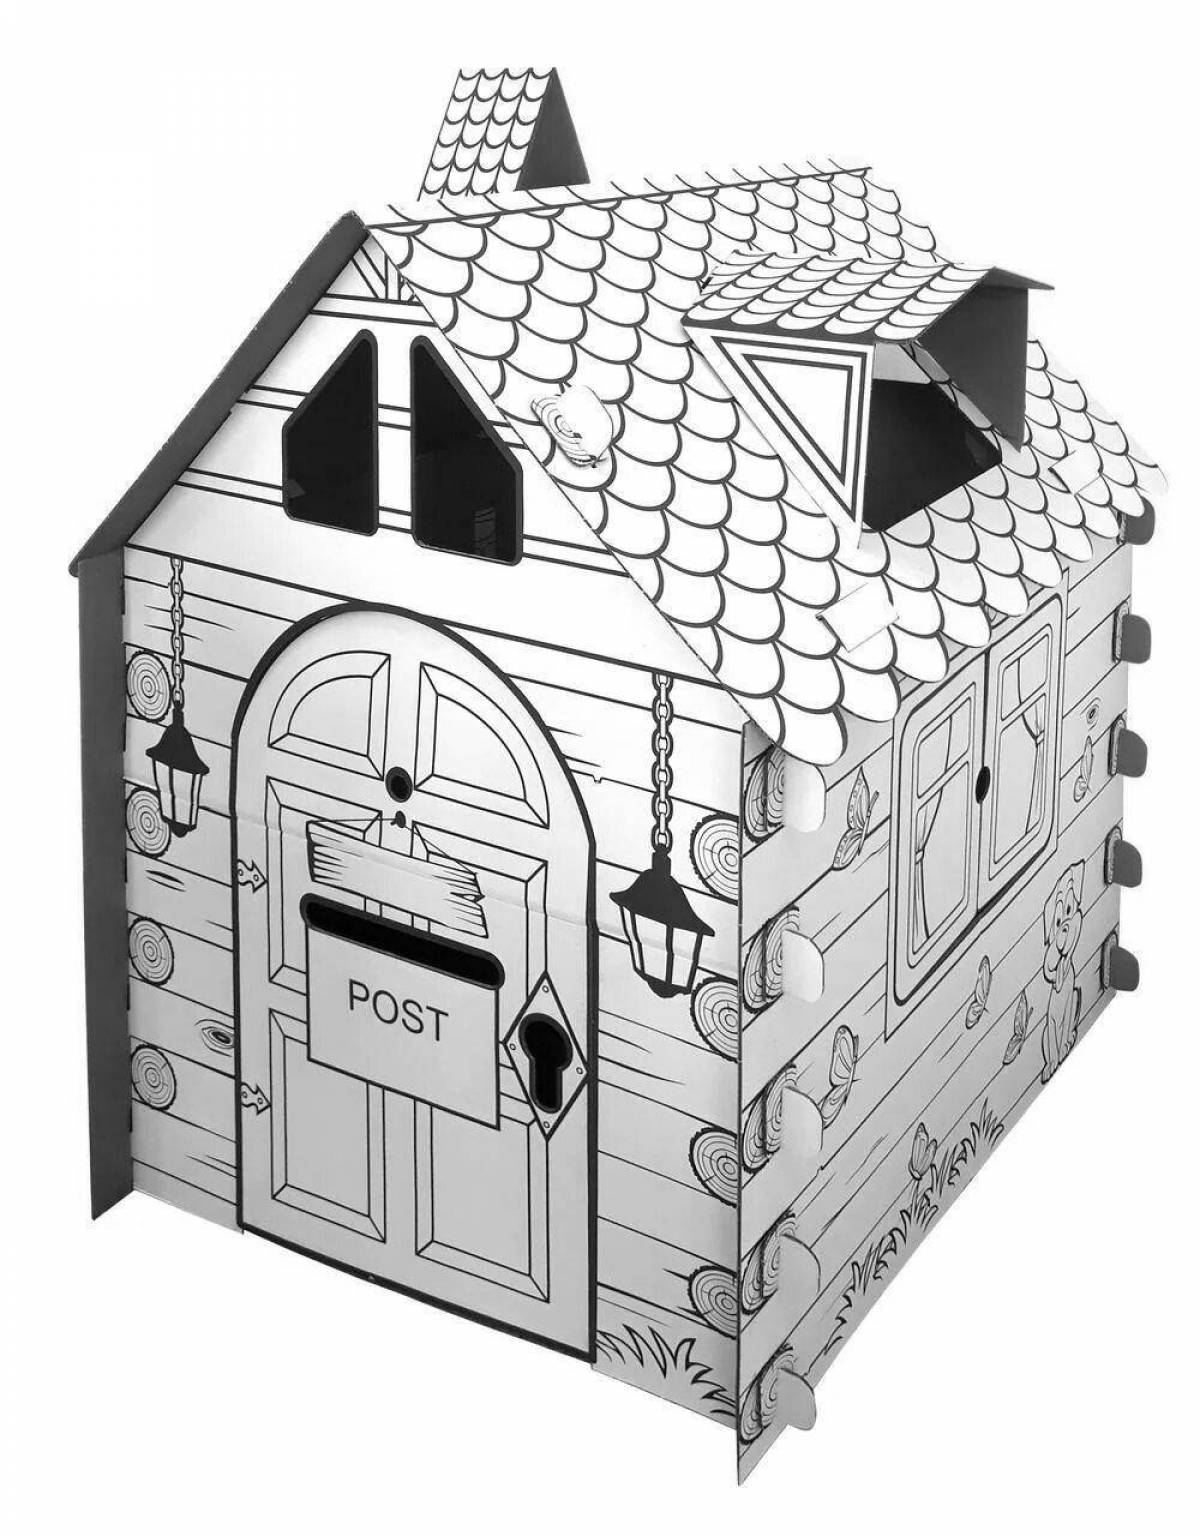 Ozone cardboard house #6